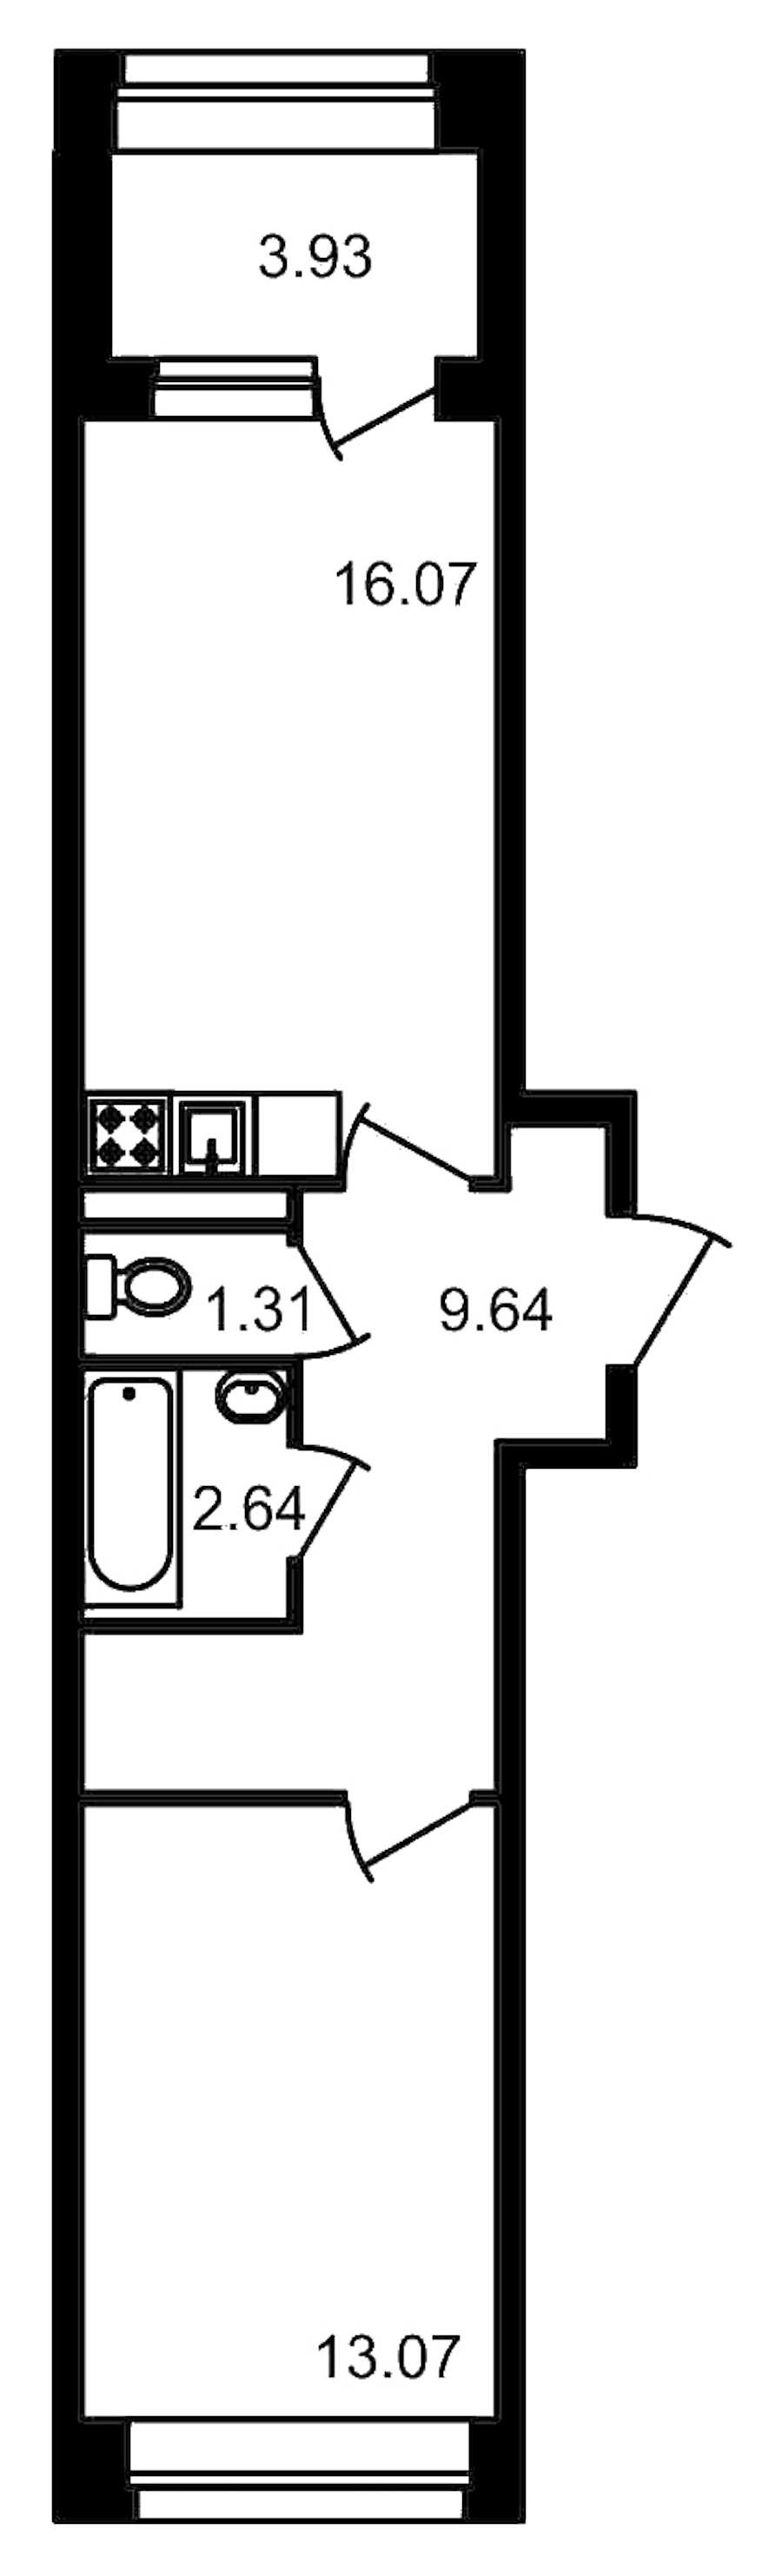 Однокомнатная квартира в ЦДС: площадь 46.66 м2 , этаж: 2 – купить в Санкт-Петербурге